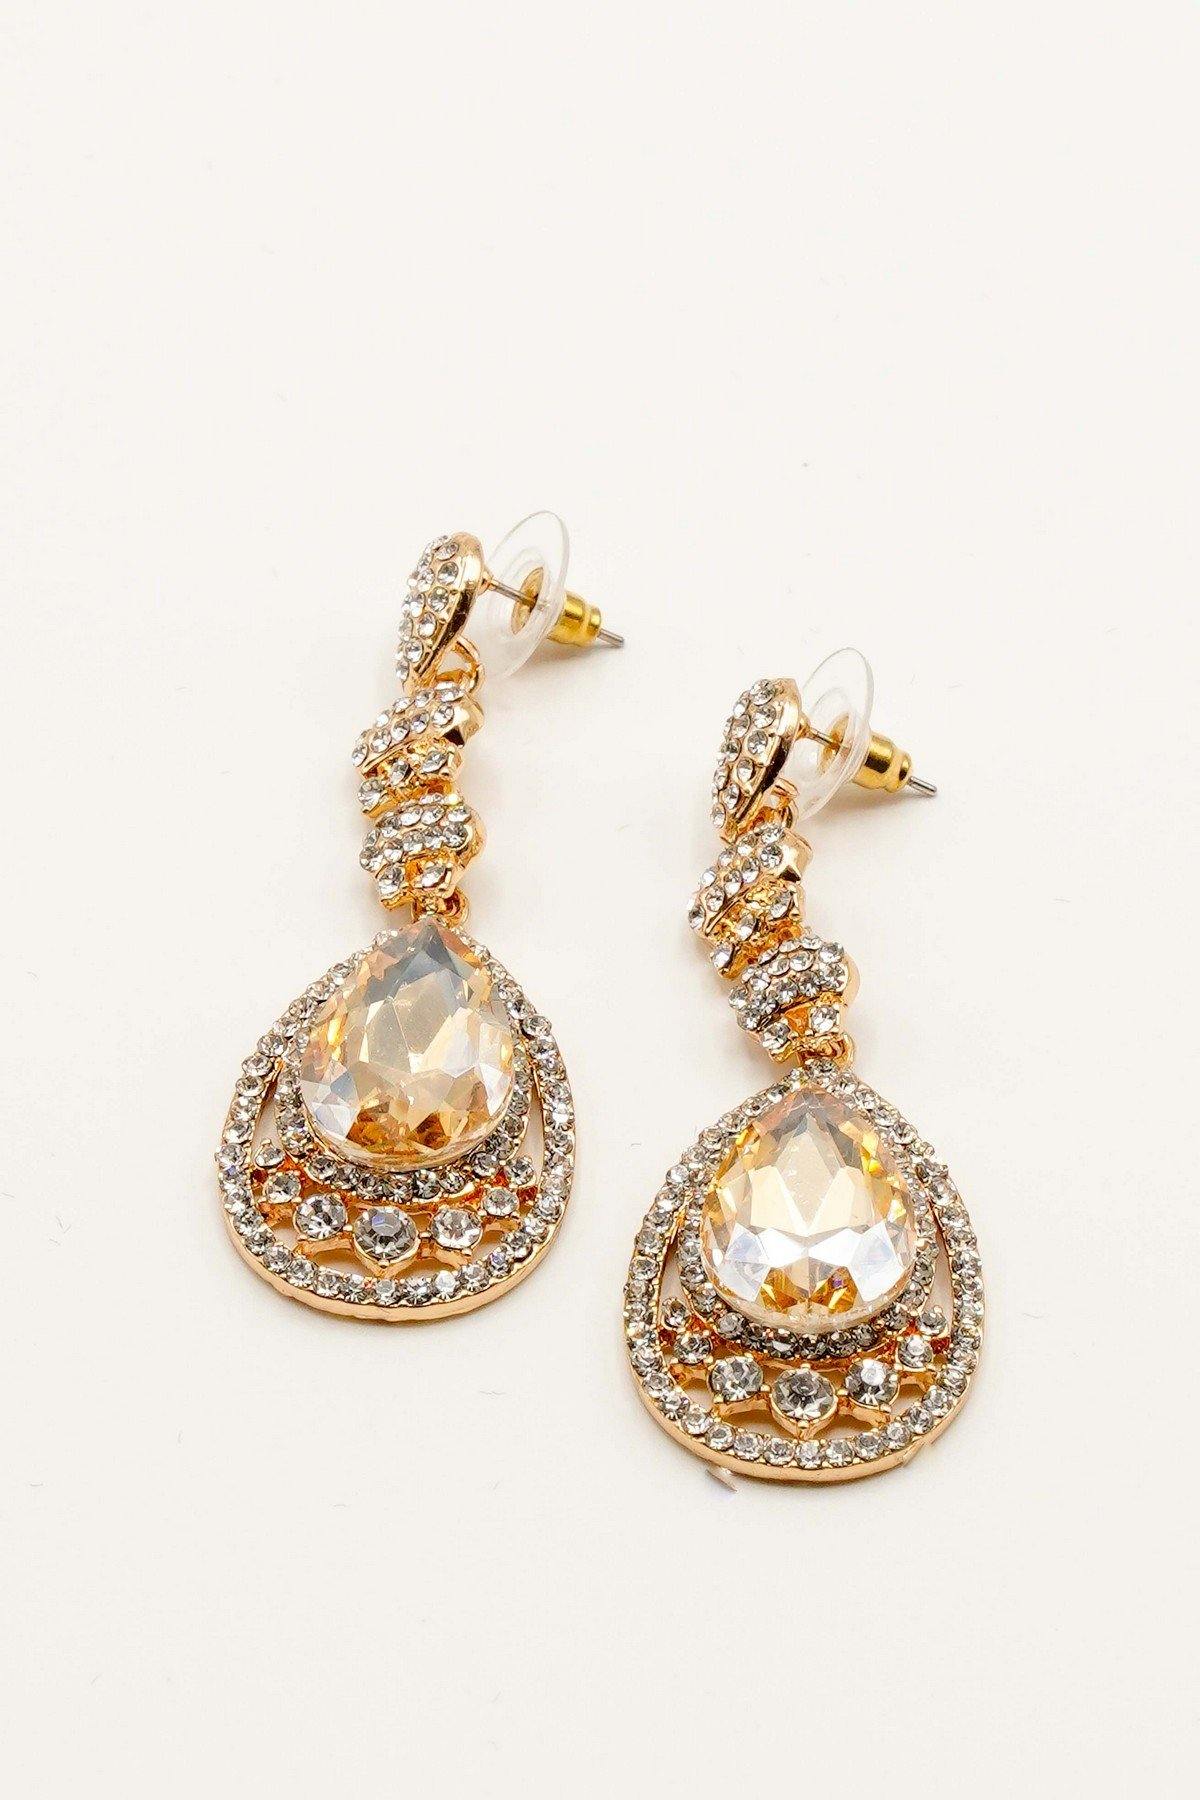 Rhinestone Encrust Diamante Teardrop Earrings - The Dress Outlet